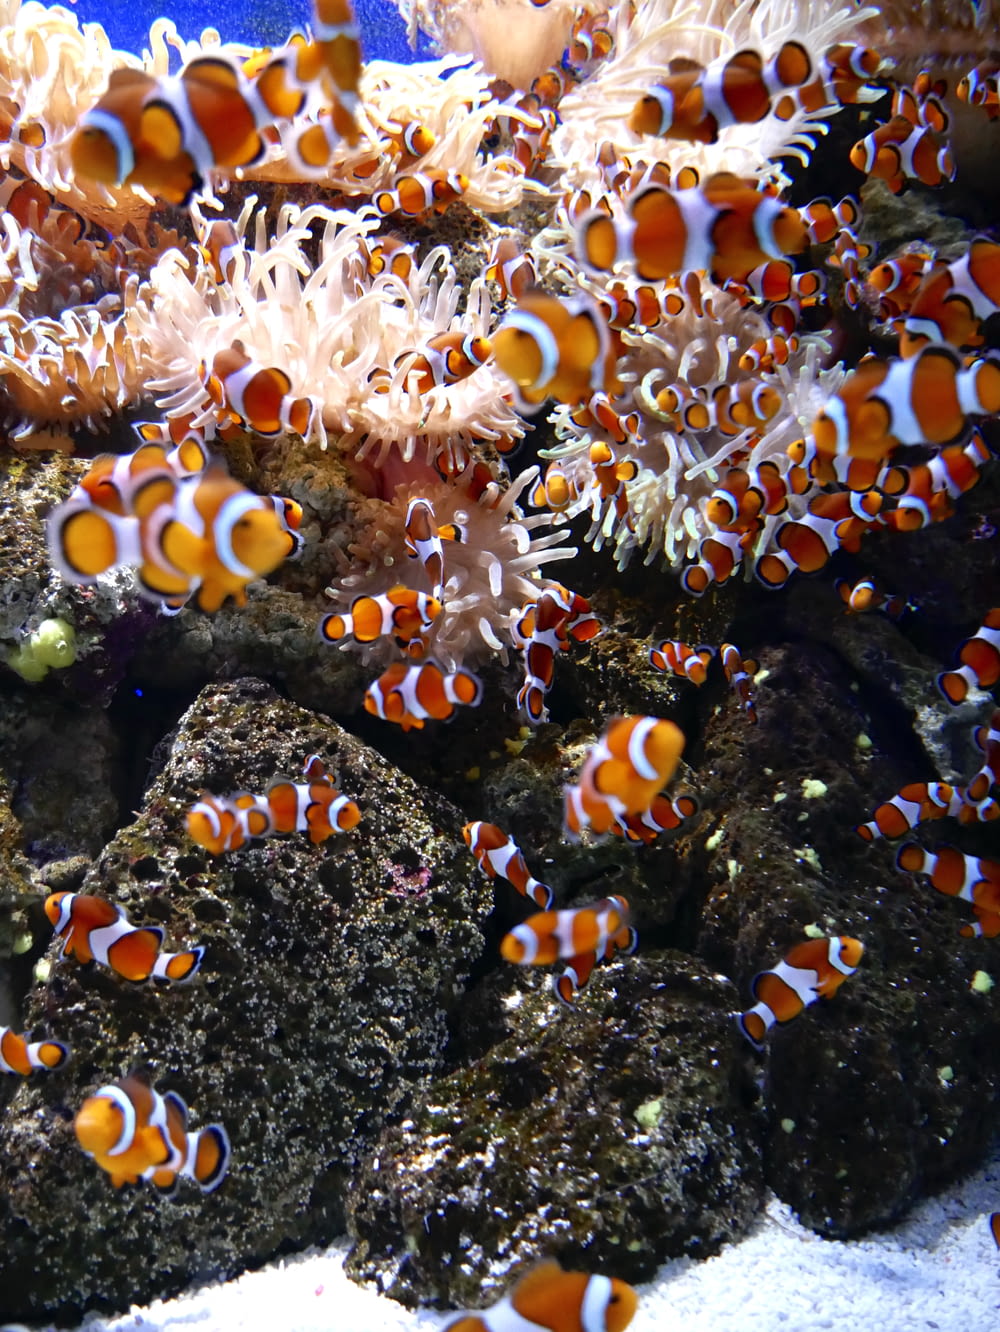 a group of clown fish in an aquarium